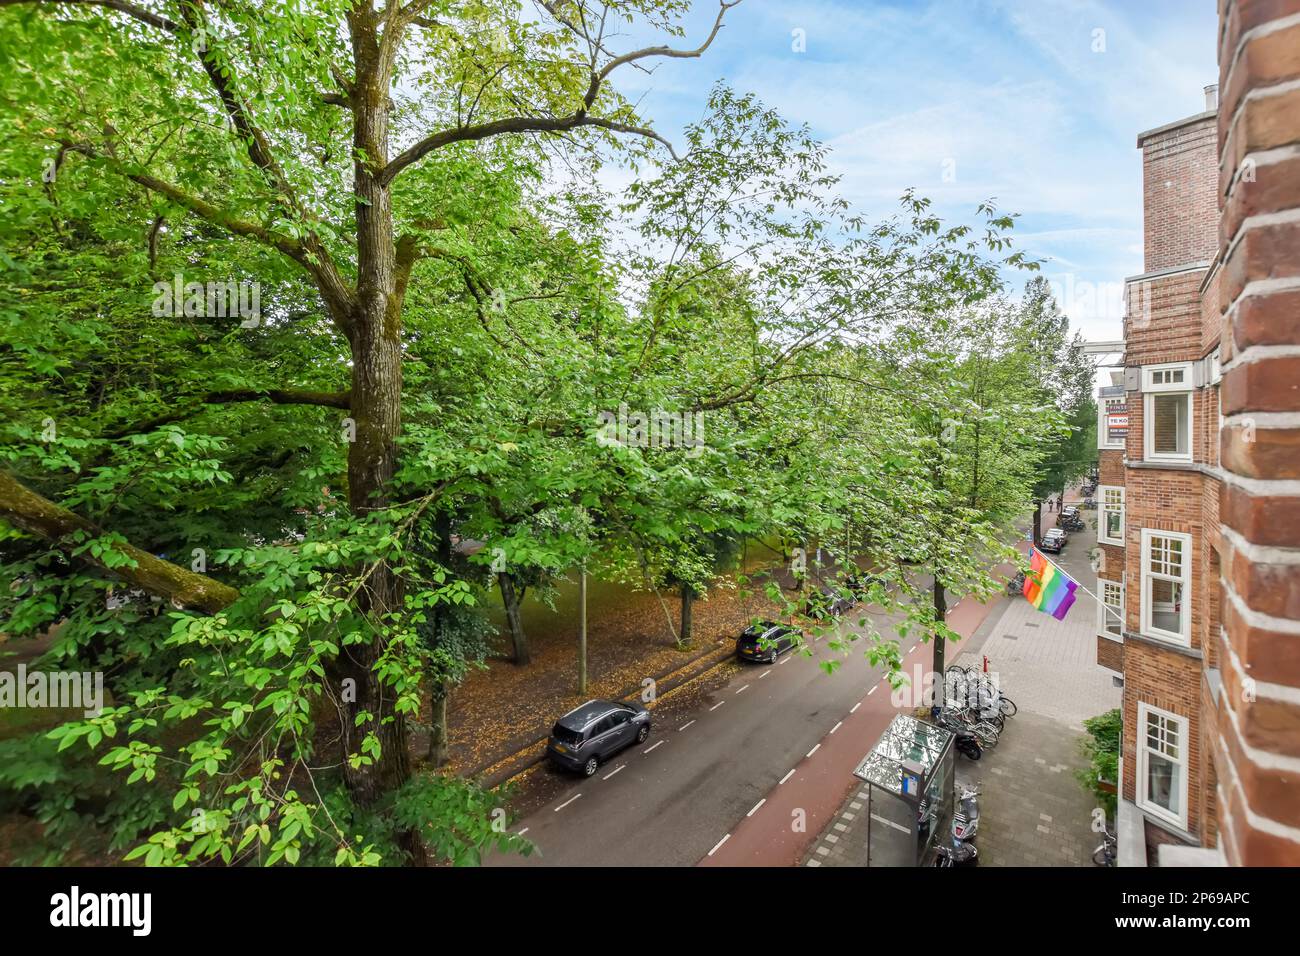 Amsterdam, Niederlande - 10. April 2021: Eine Straße mit Autos, die an der Seite geparkt sind, und Bäumen in der Mitte der Straße, die von oben genommen wird Stockfoto